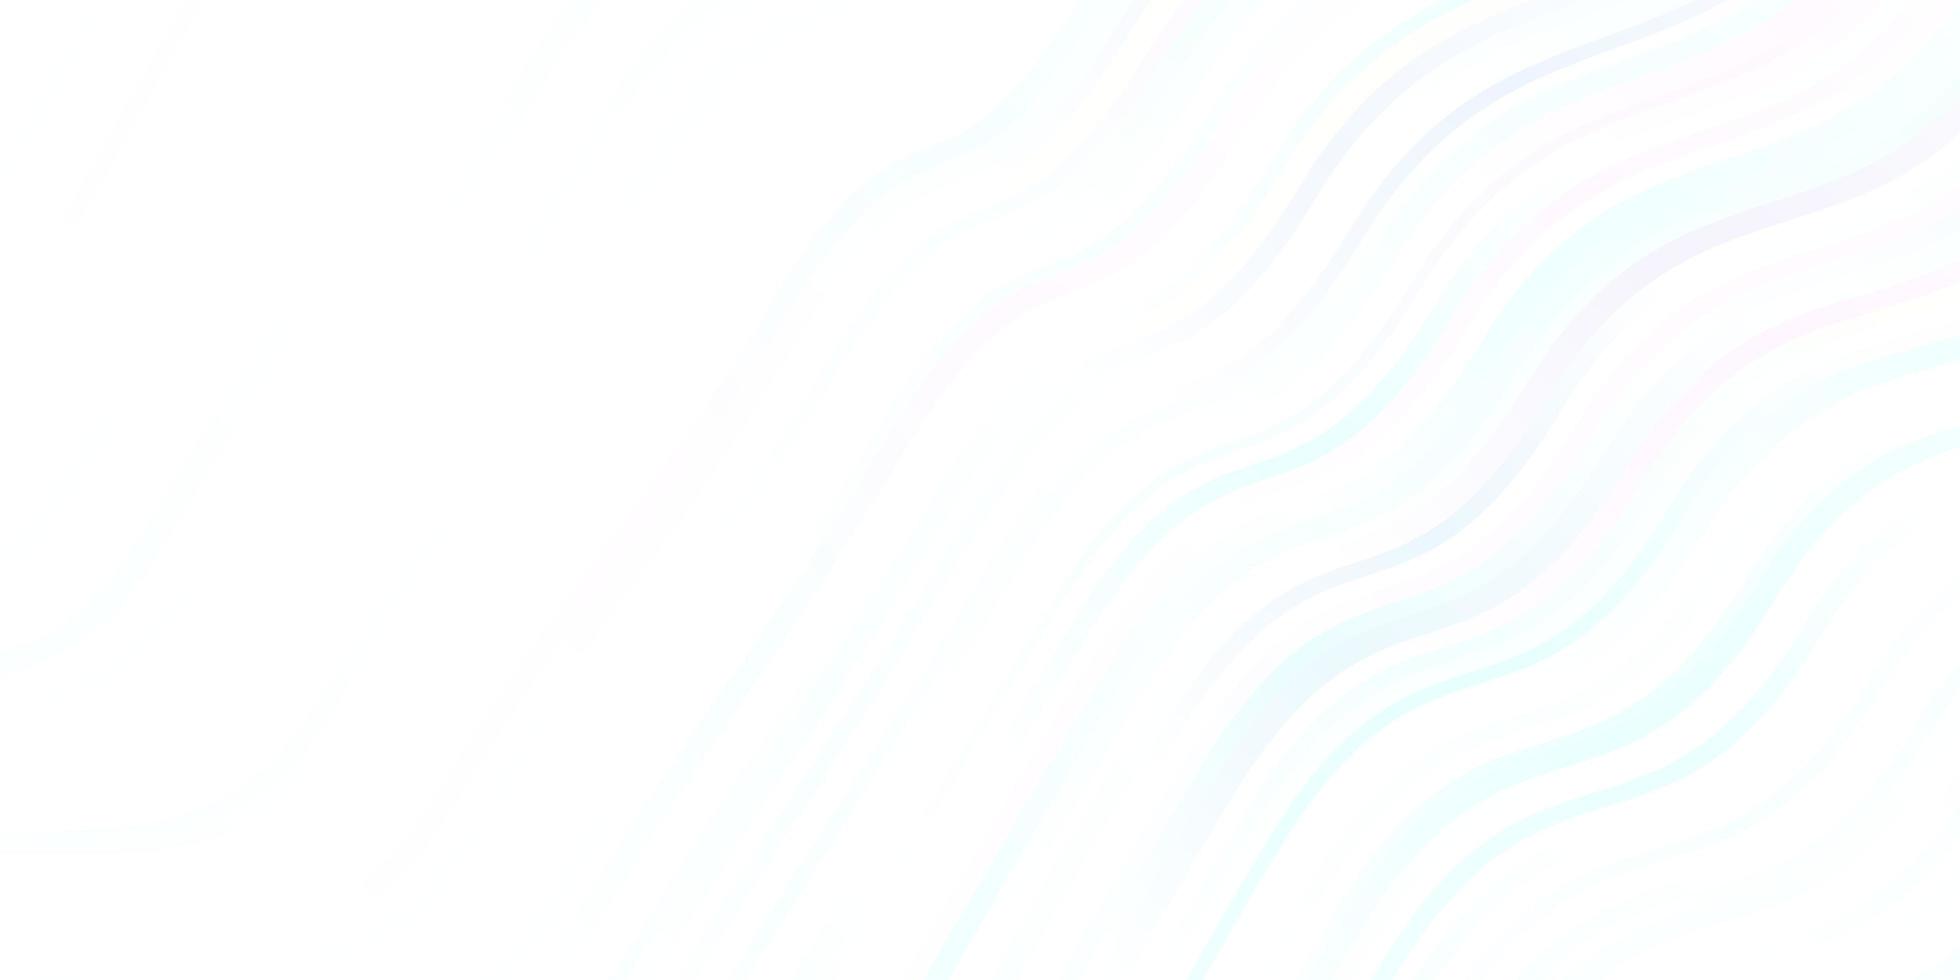 pano de fundo vector azul claro com curvas. ilustração de gradiente em estilo simples com arcos. padrão para livretos, folhetos.